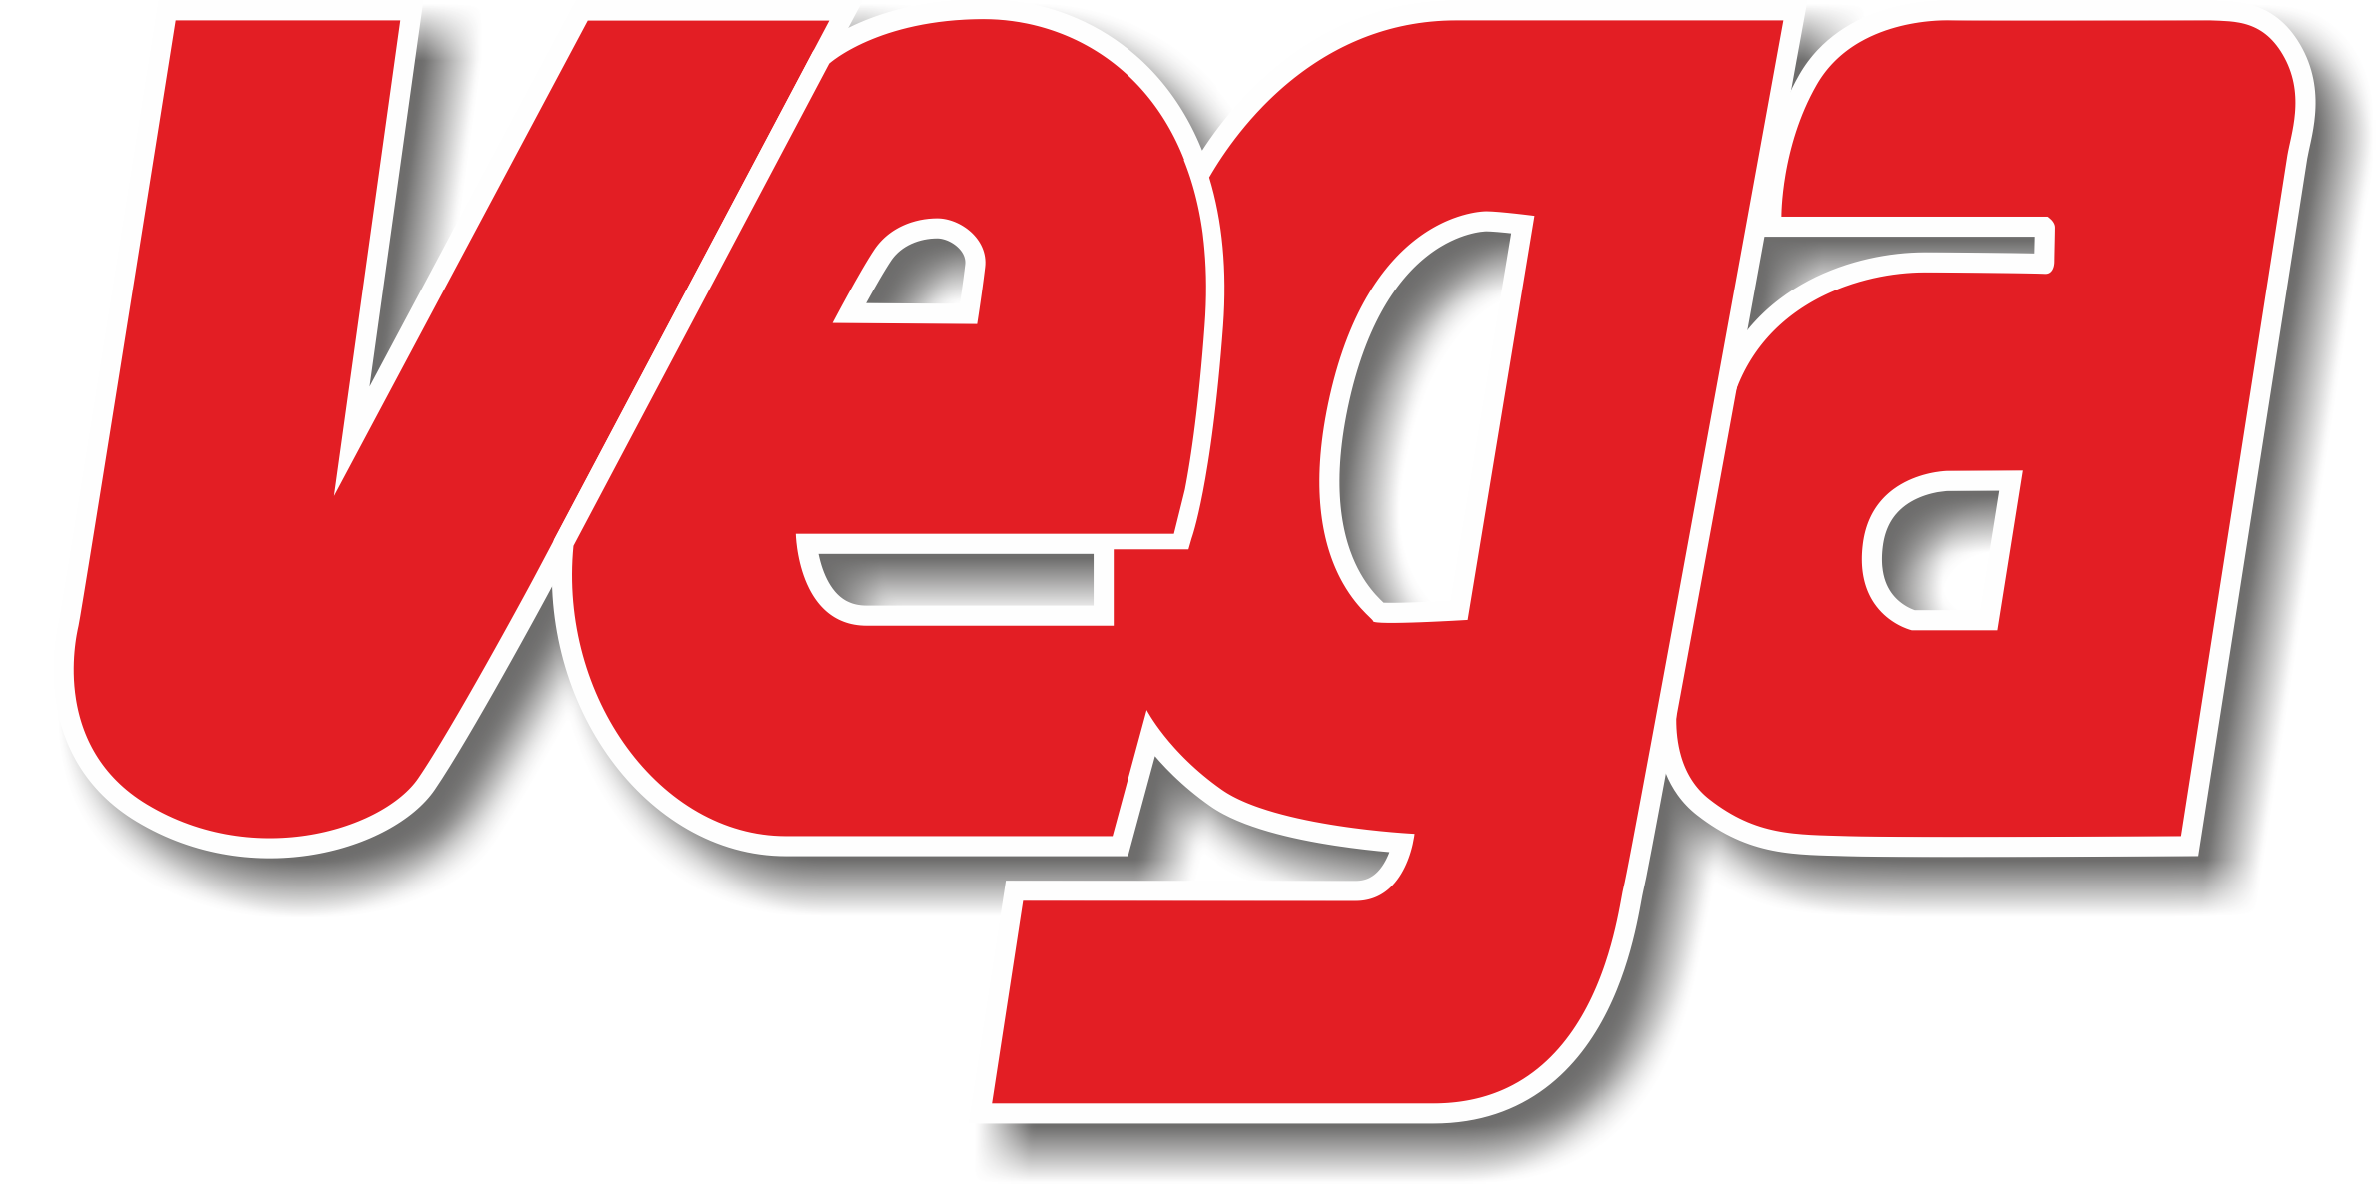 Logo Vega GDO (Grande Distribuzione Organizzata)